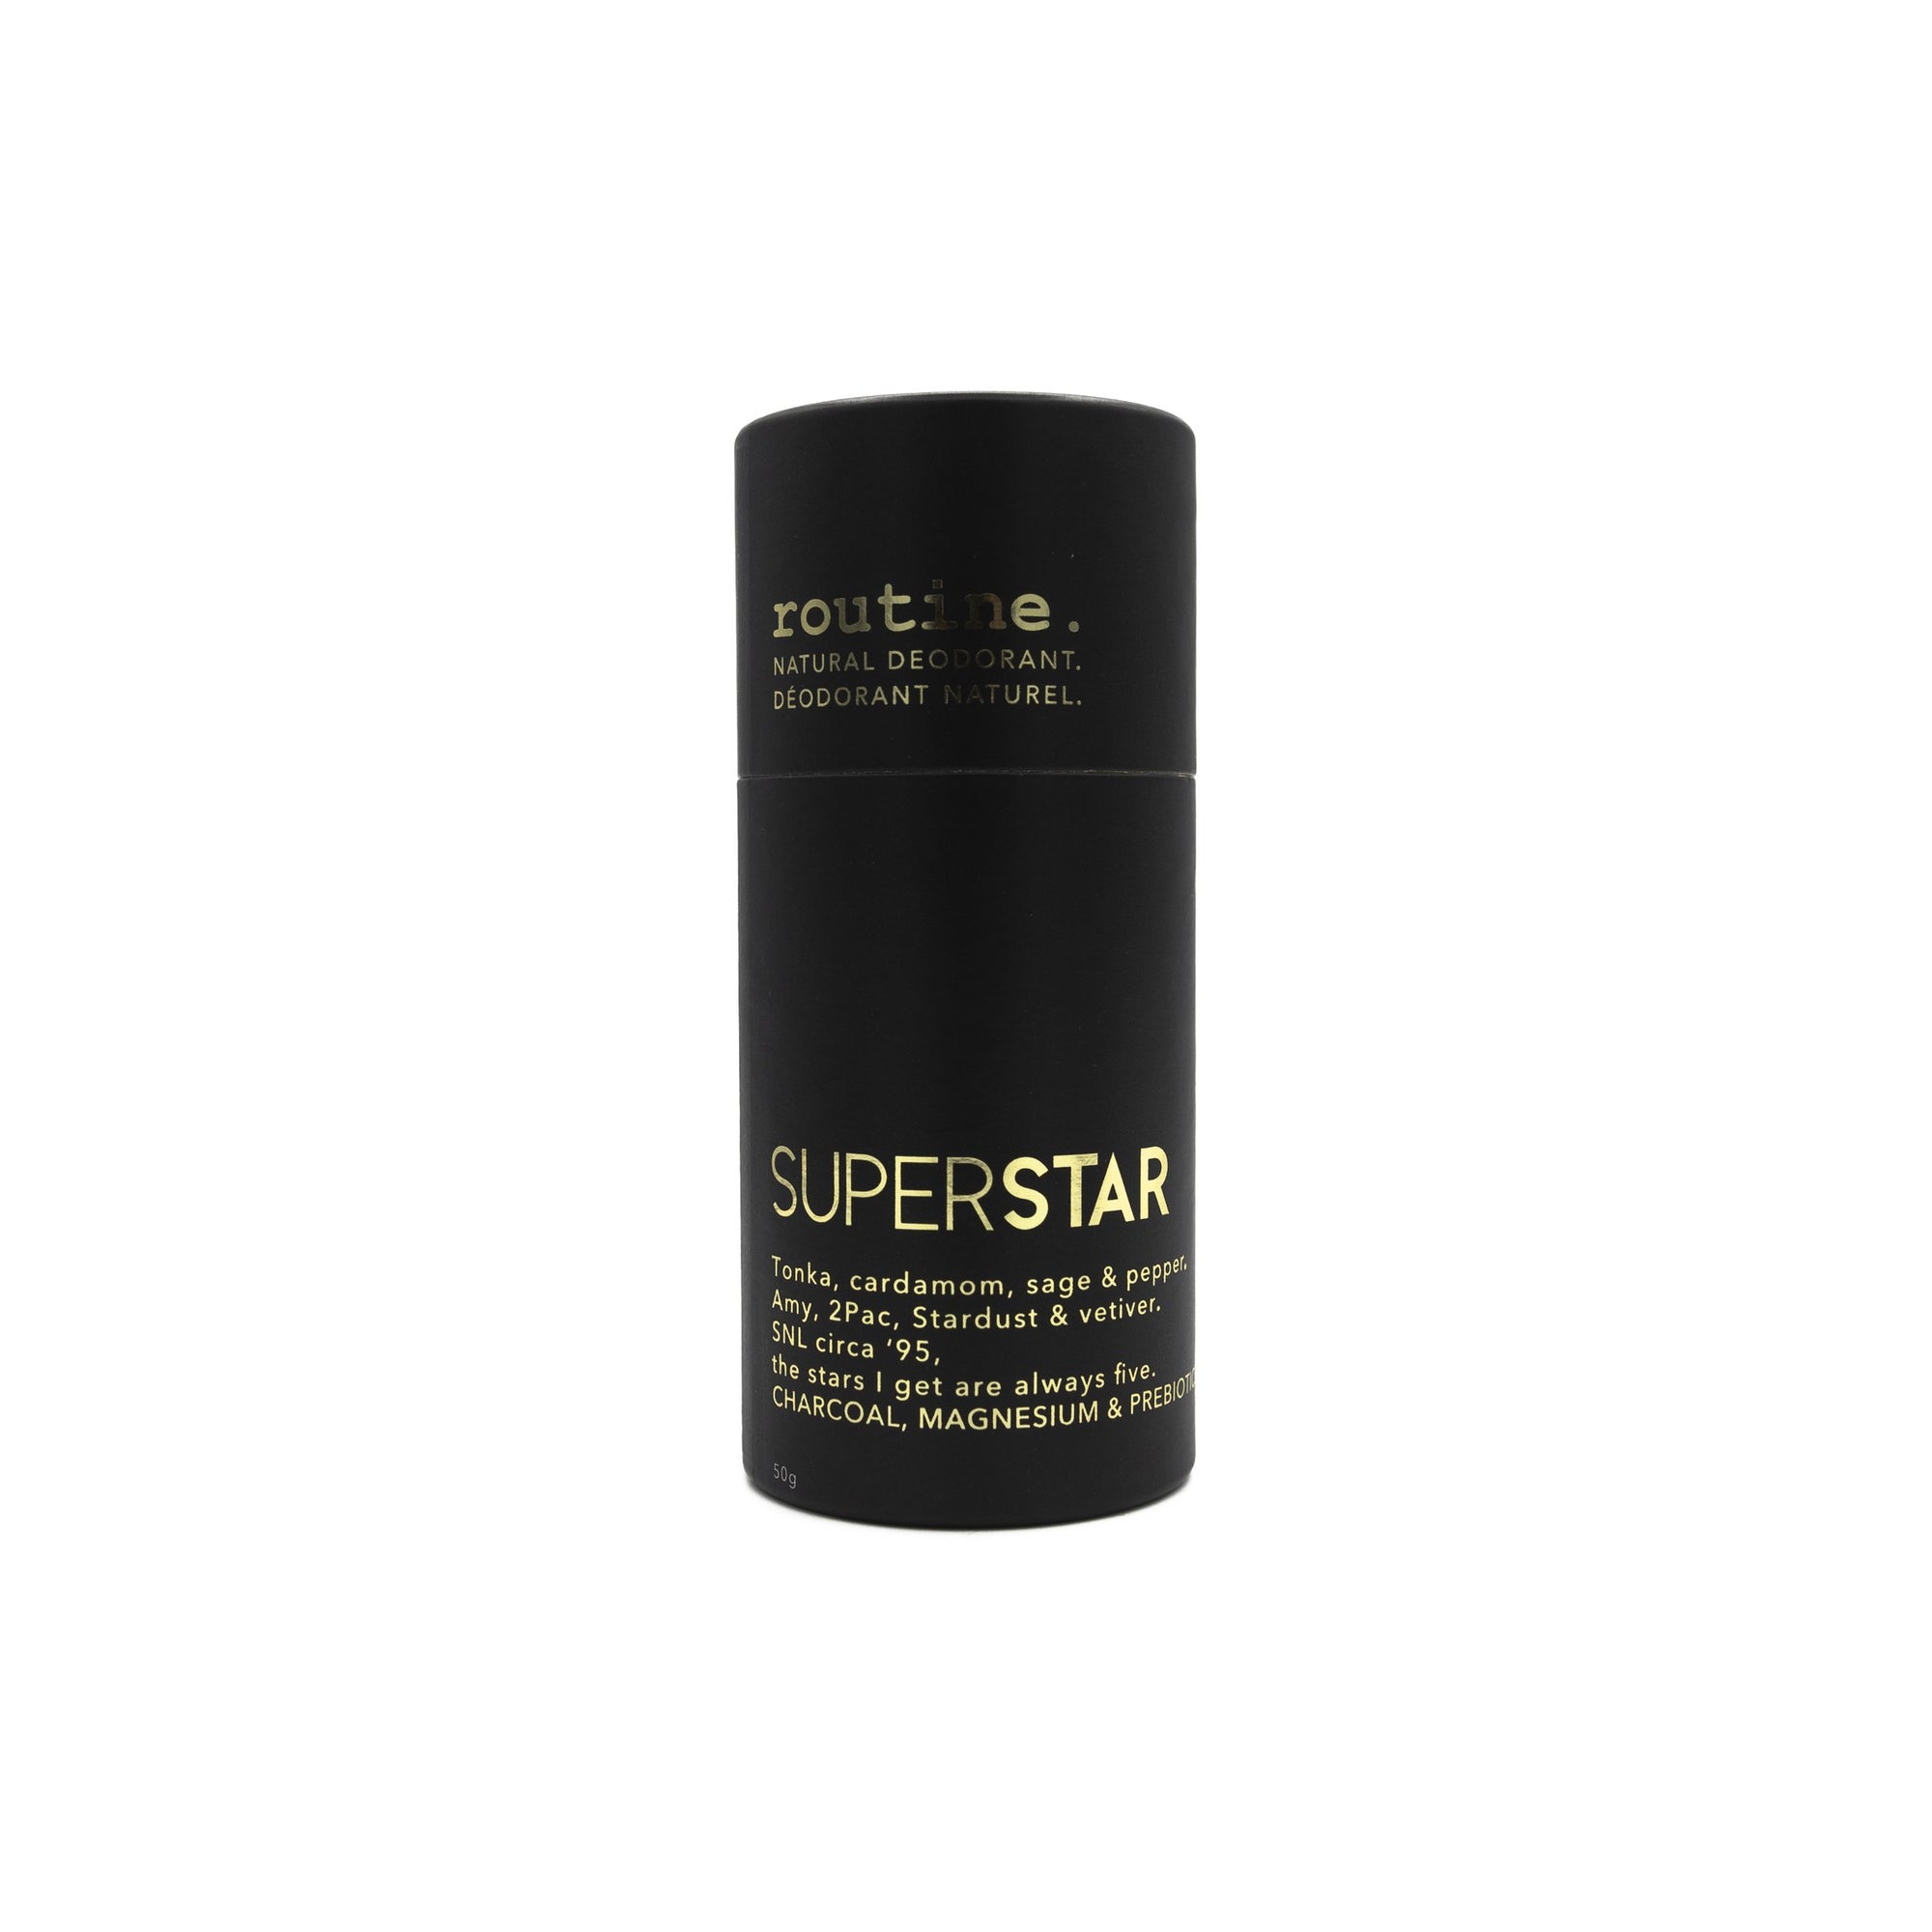 Routine Superstar Natural Deodorant Stick 50g